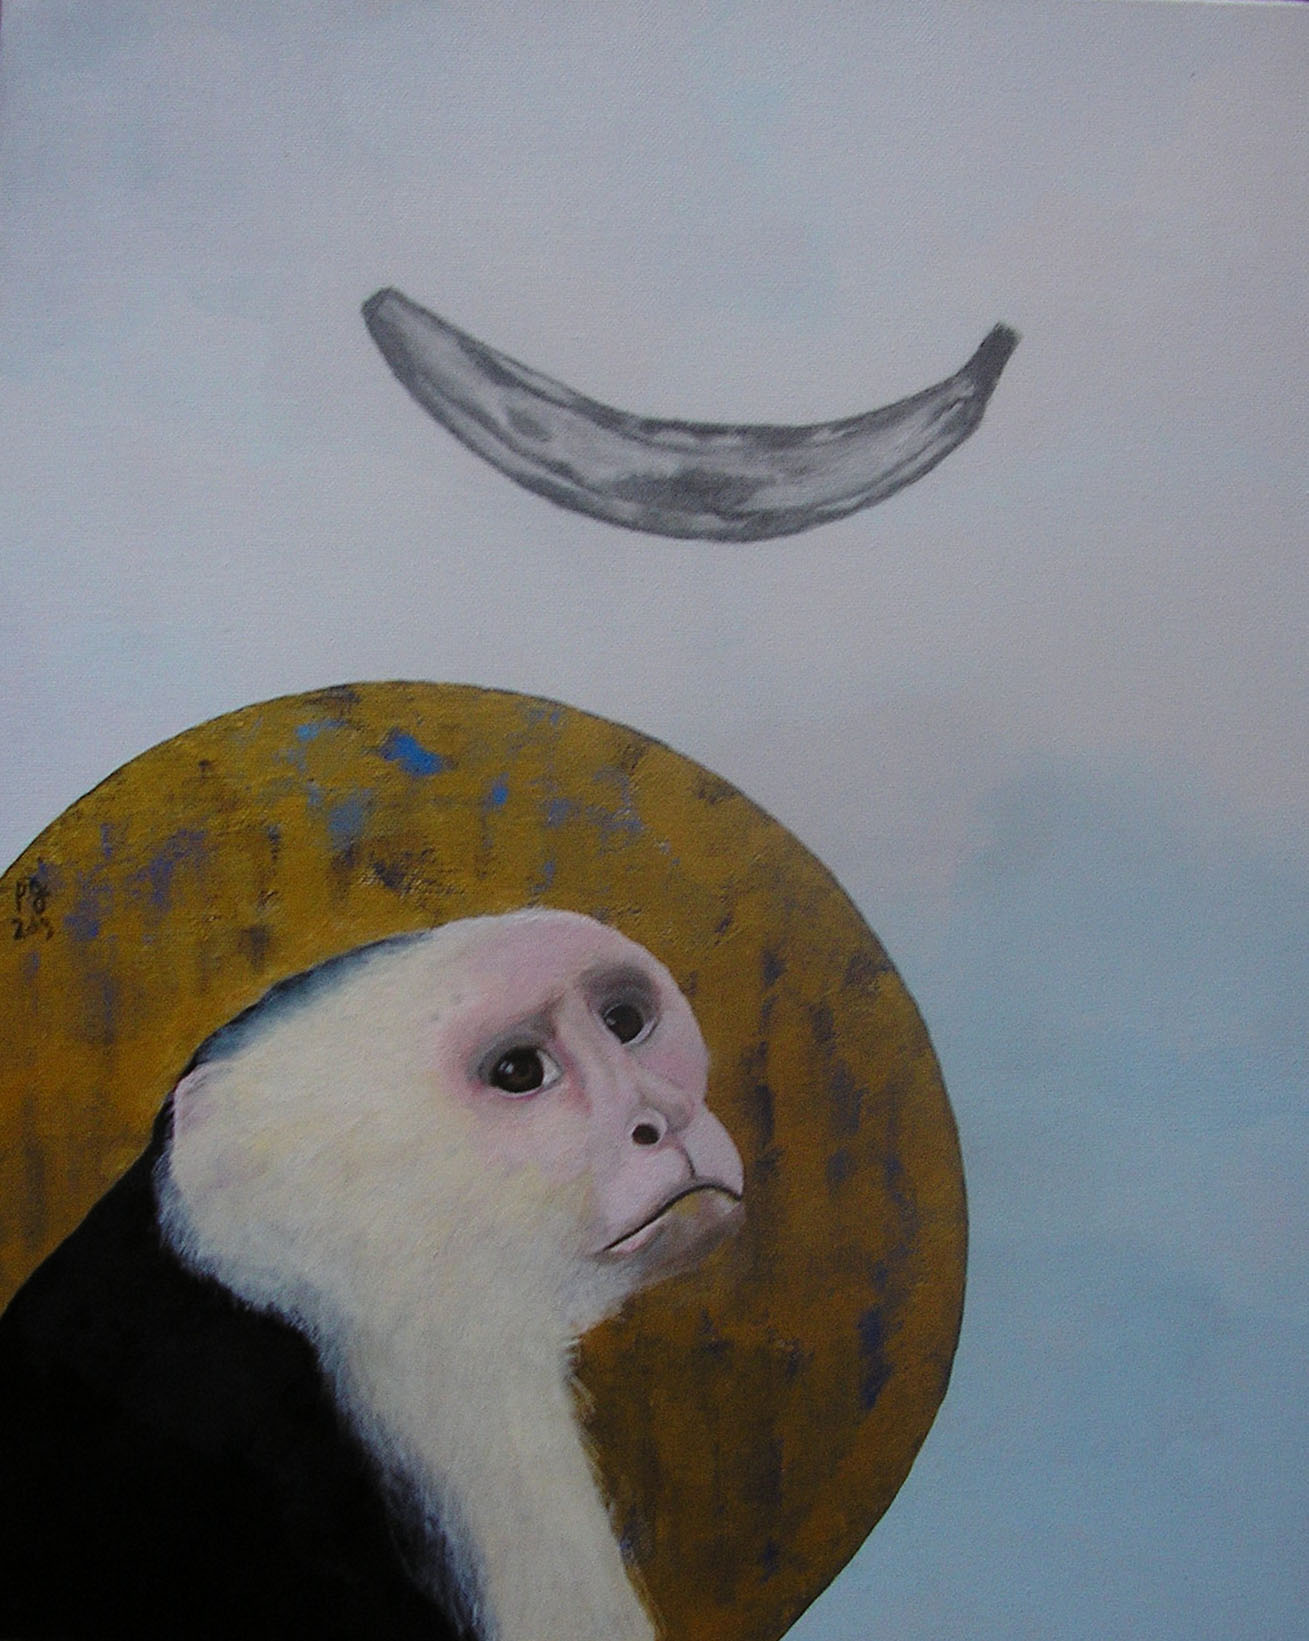 patrick gourgouillat - "Banane" - 2019